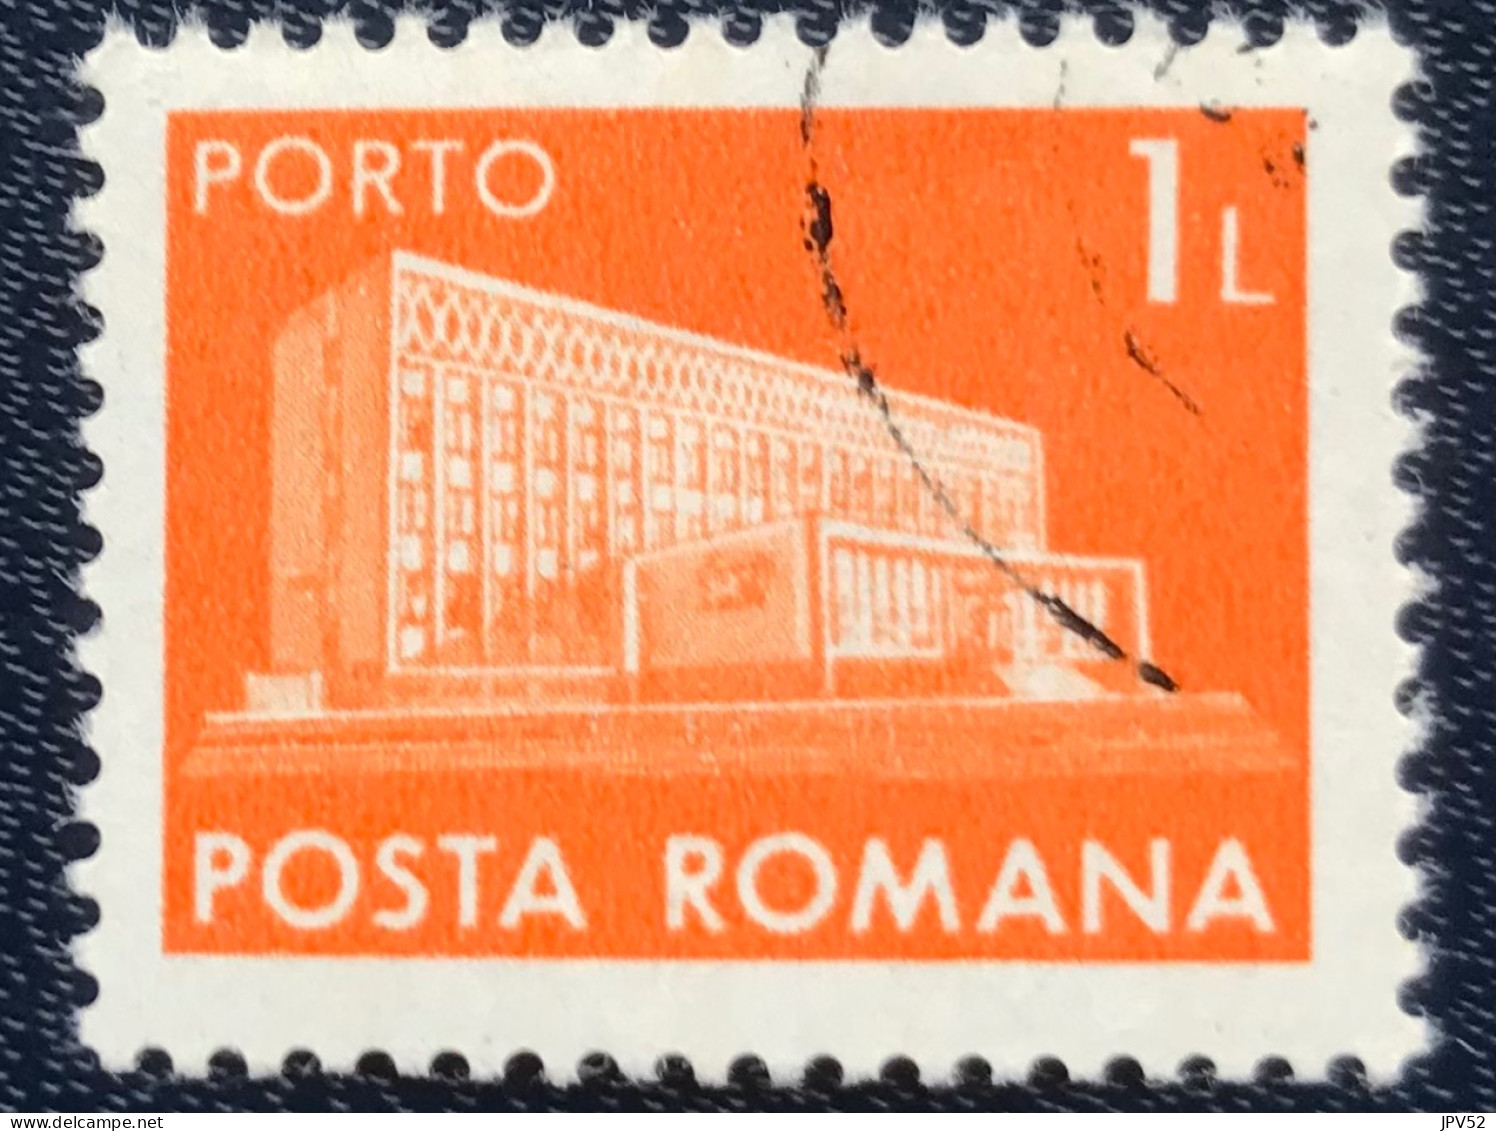 Romana - Roemenië - C14/54 - 1974 - (°)used - Michel 124 - Postkantoor - Postage Due